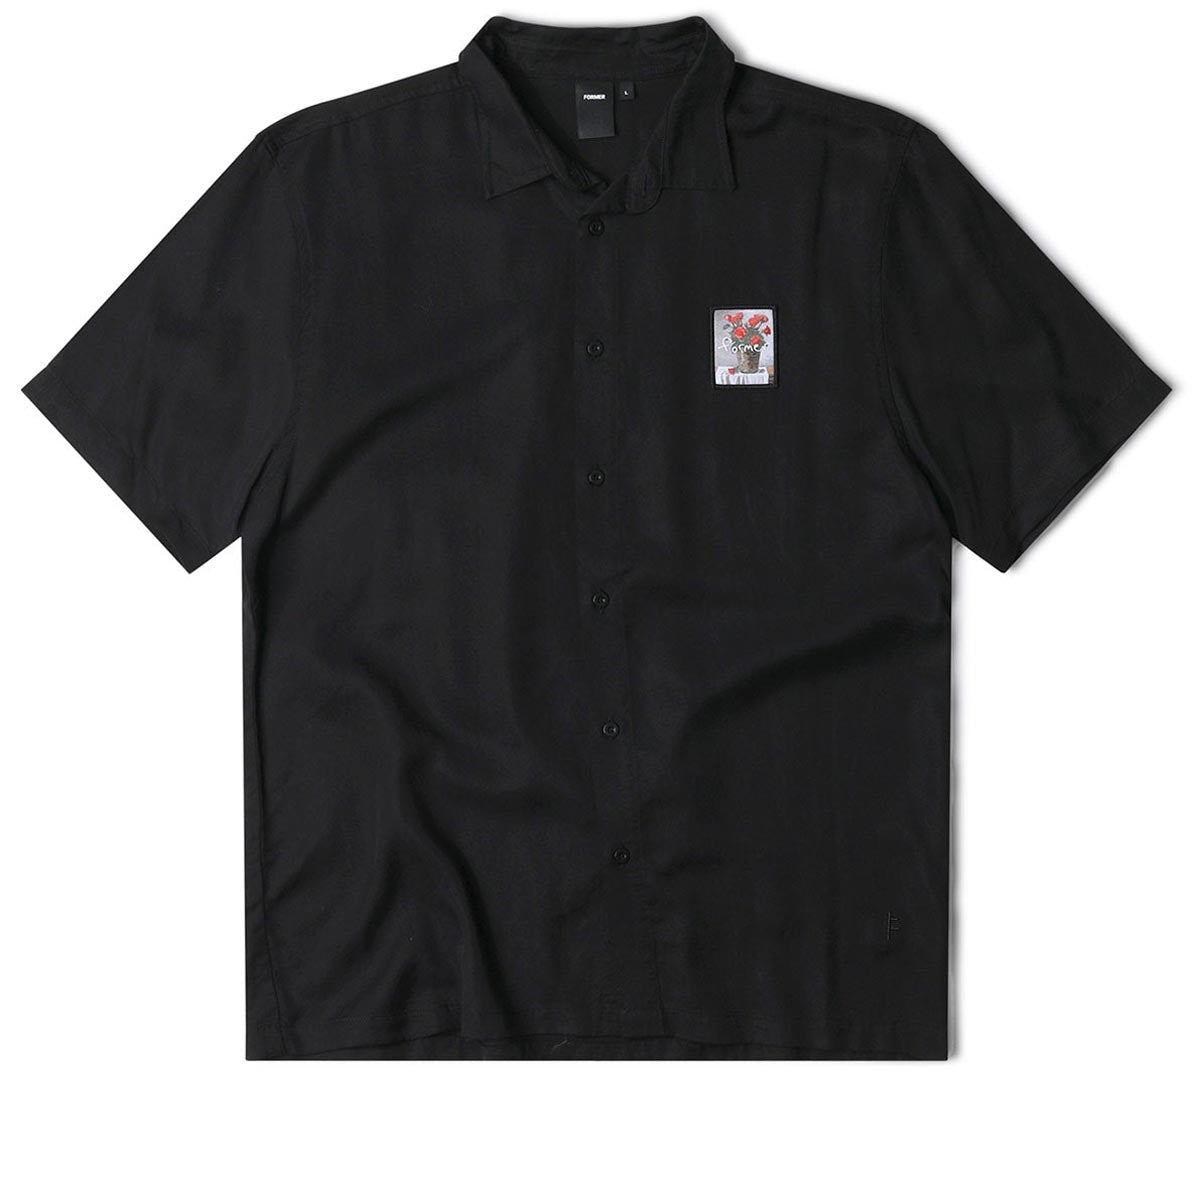 Former Vivian Still Life Shirt - Black image 4